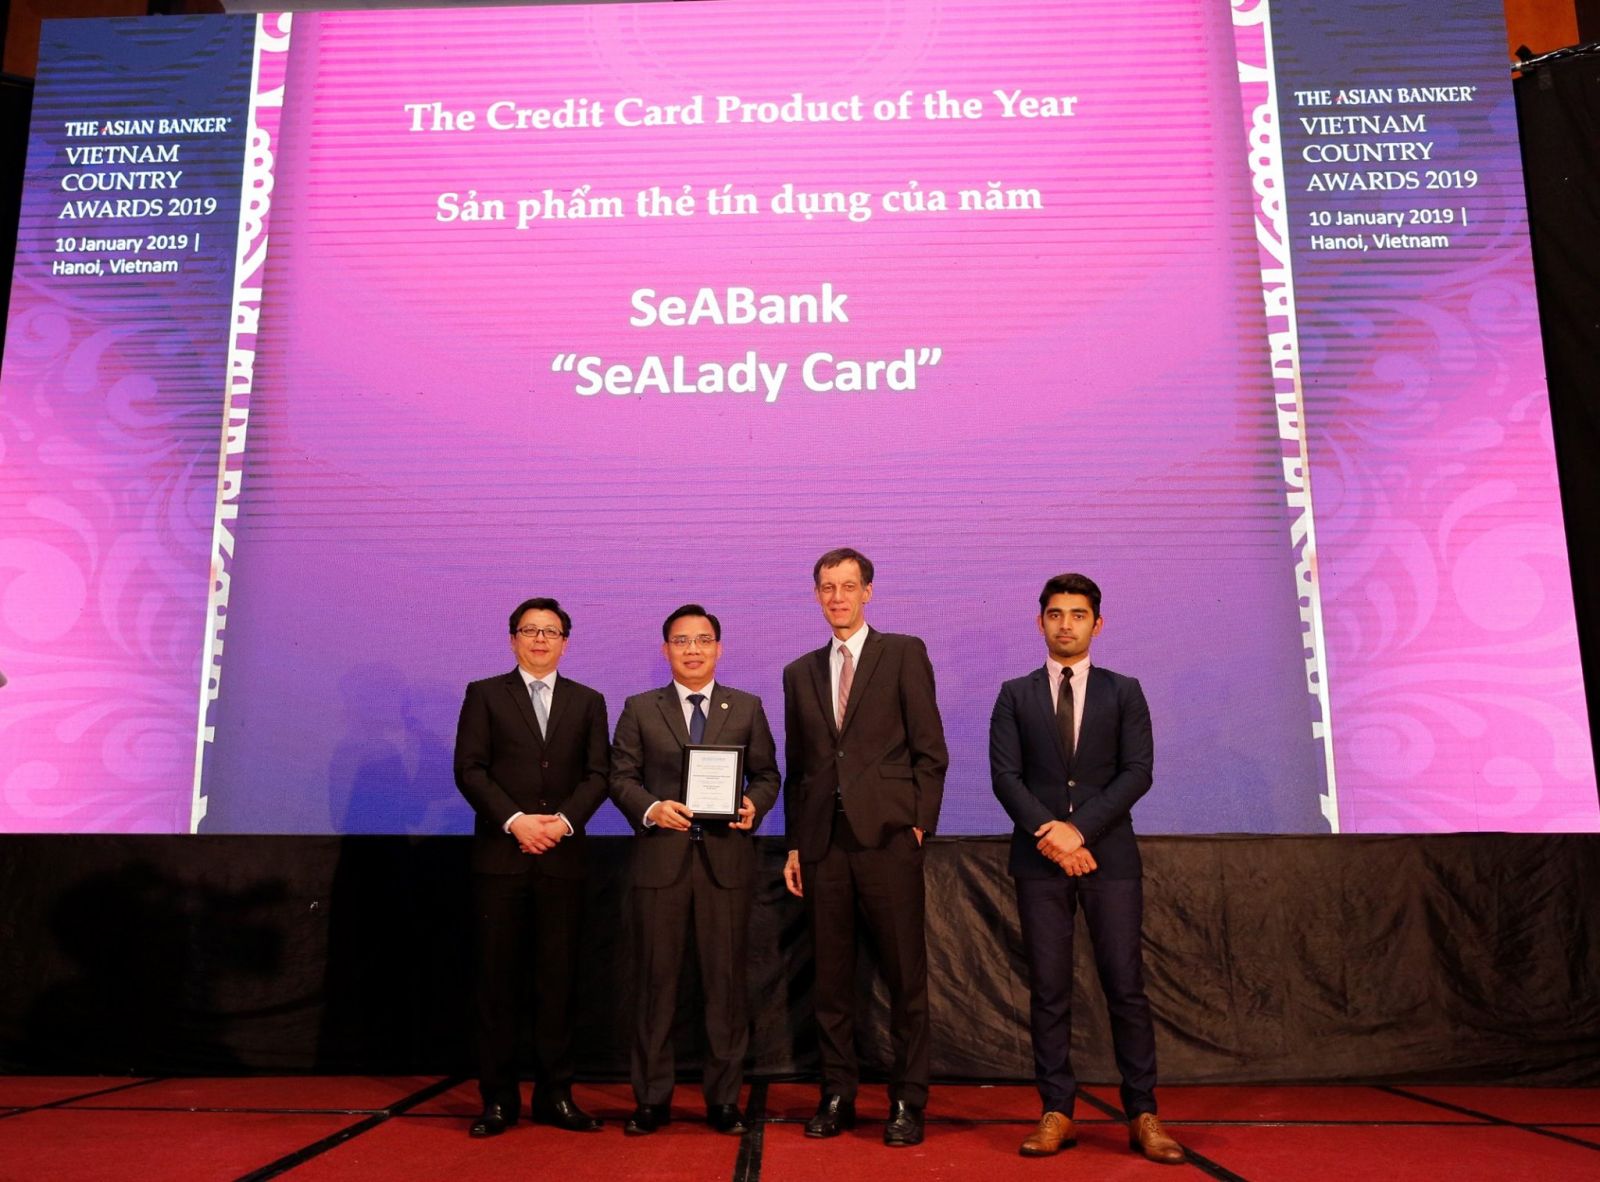 Thẻ tín dụng quốc tế Sealady vinh dự được The Asian Banker bình chọn là “Sản phẩm thẻ tín dụng tiêu biểu của năm 2018”